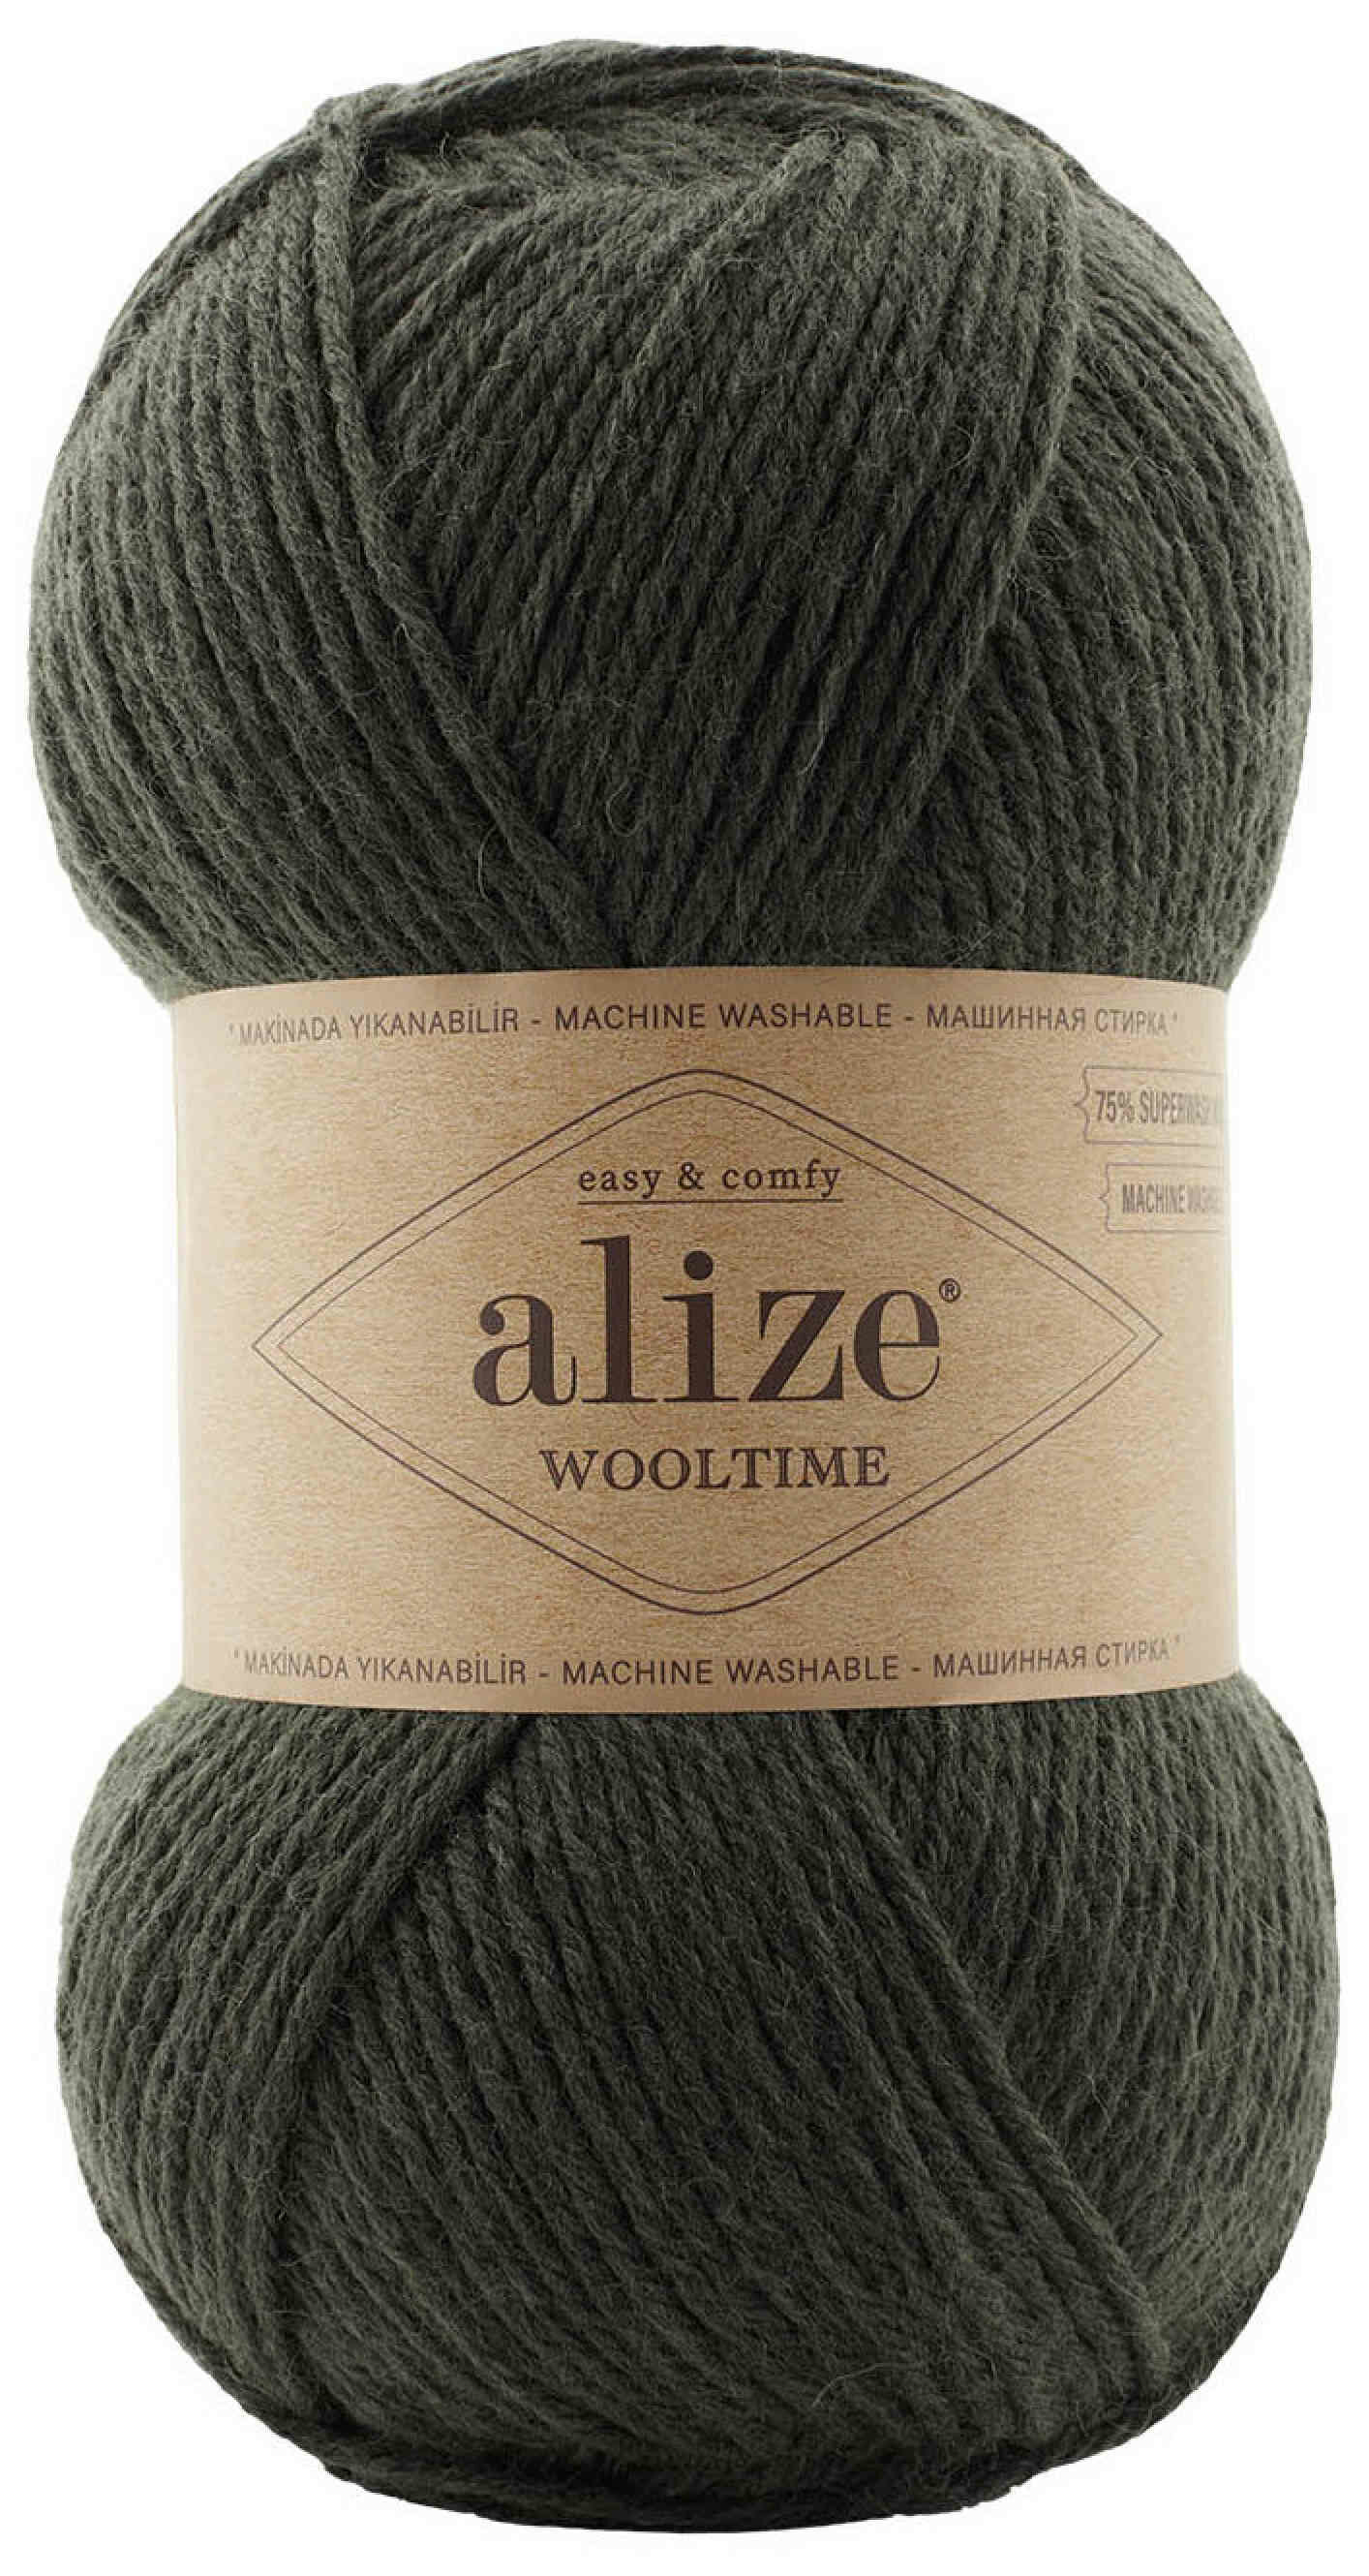 Пряжа Alize Wooltime темный хаки (873), 75%шерсть/25%полиамид, 200м, 100г, 1шт